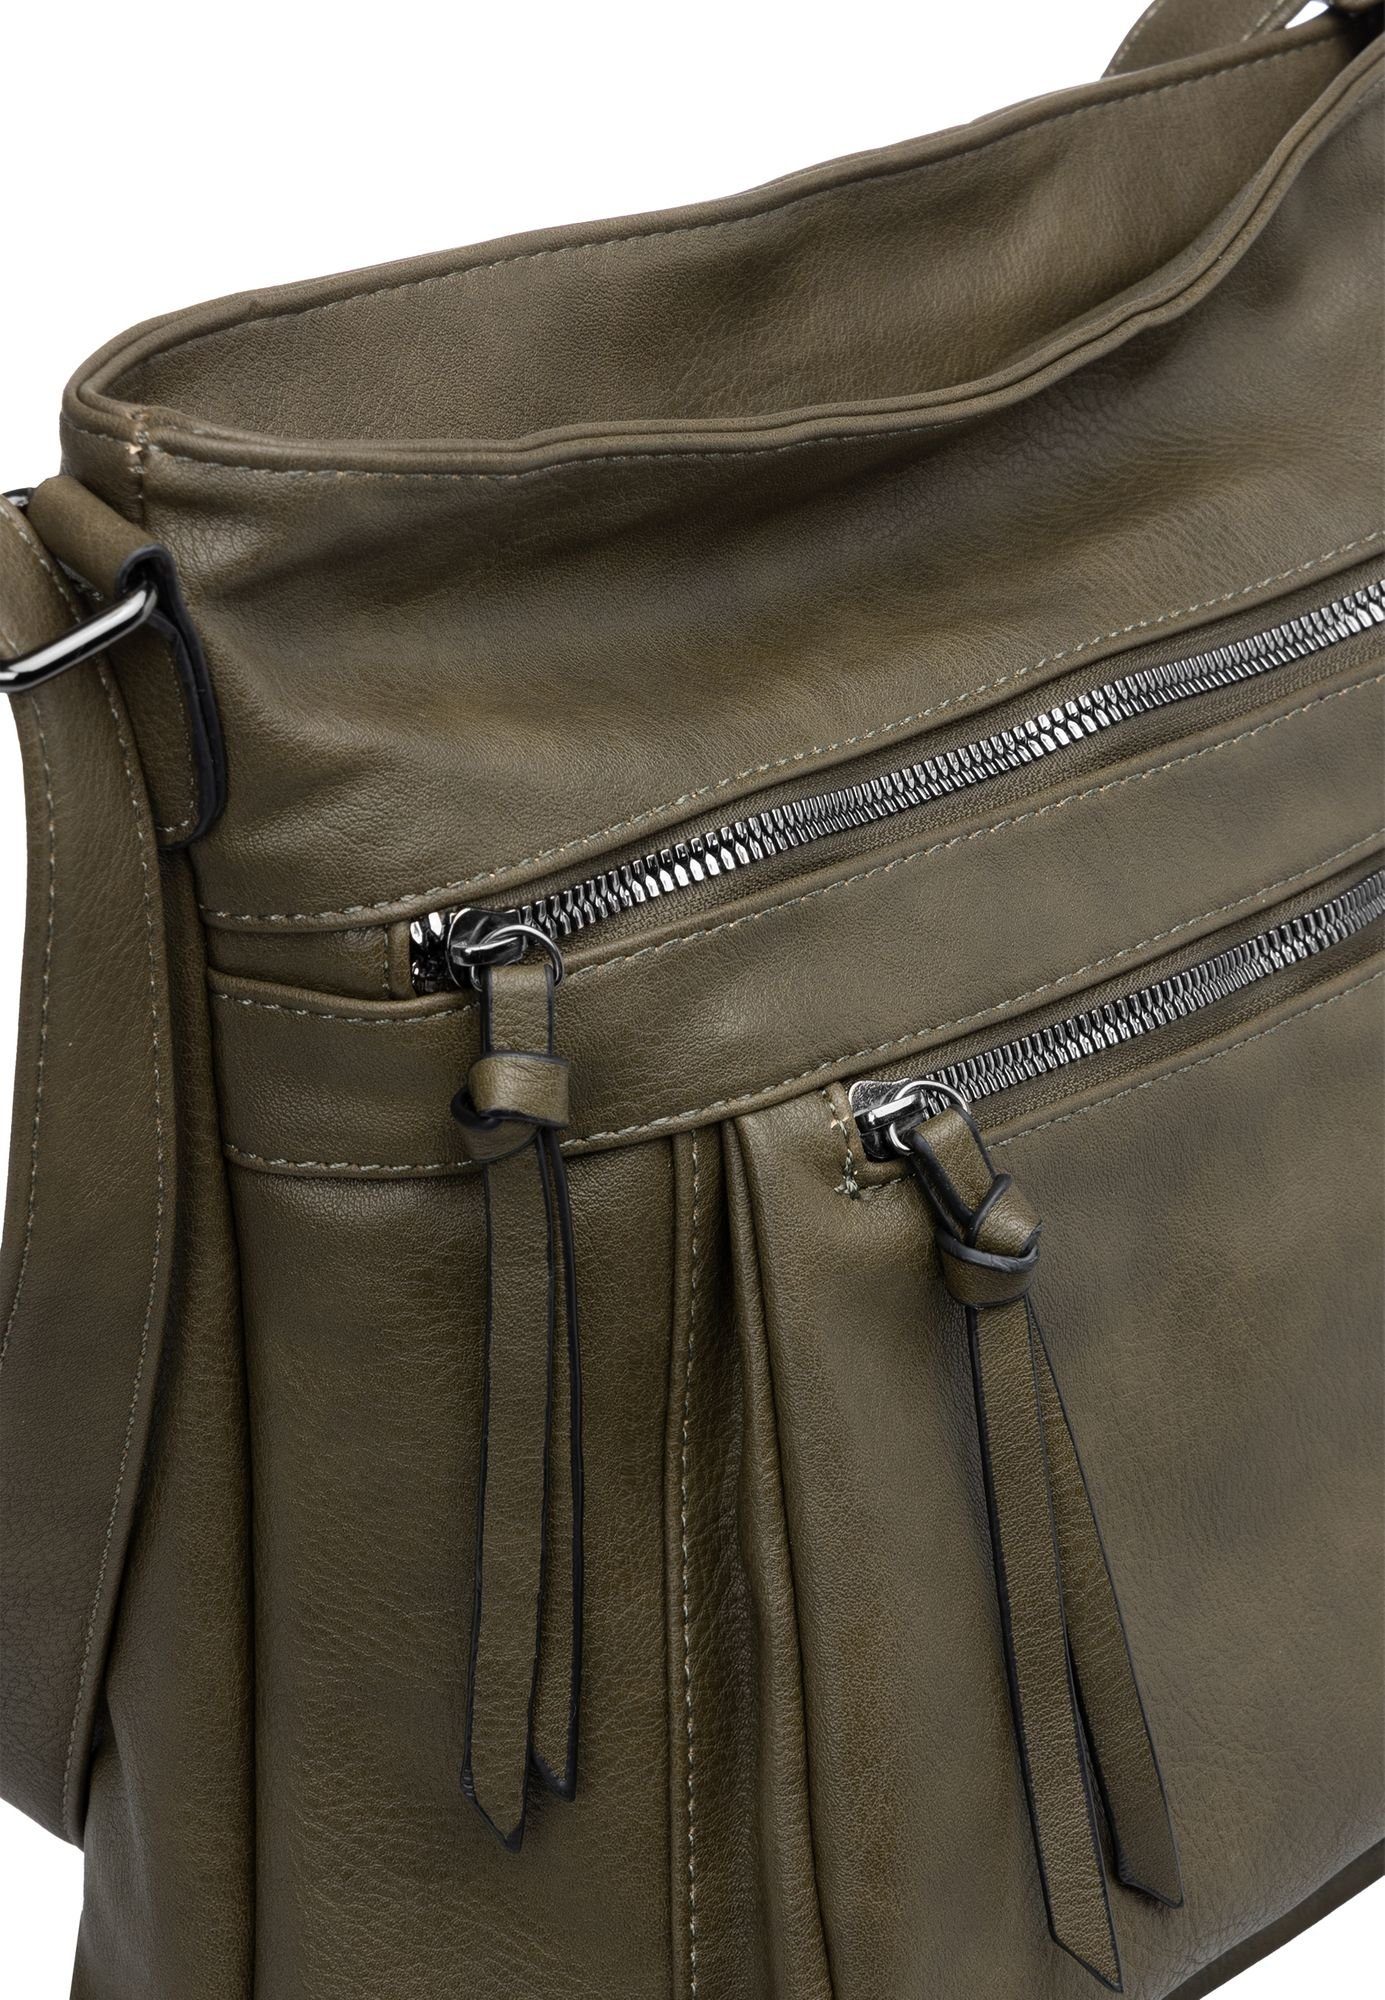 grün Umhängetasche Crossbody Bag Caspar Umhängetasche mittelgroße Damen TS1070 oliv elegante sportlich